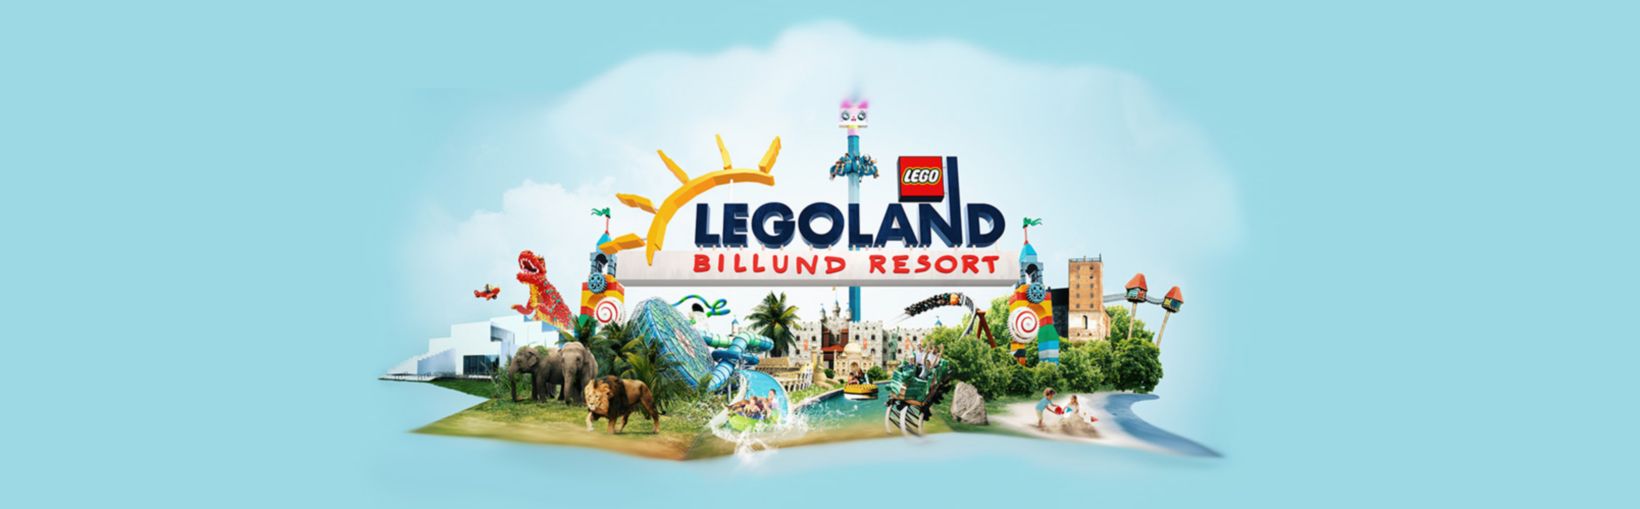 Legoland Billund Resort hrdina banner